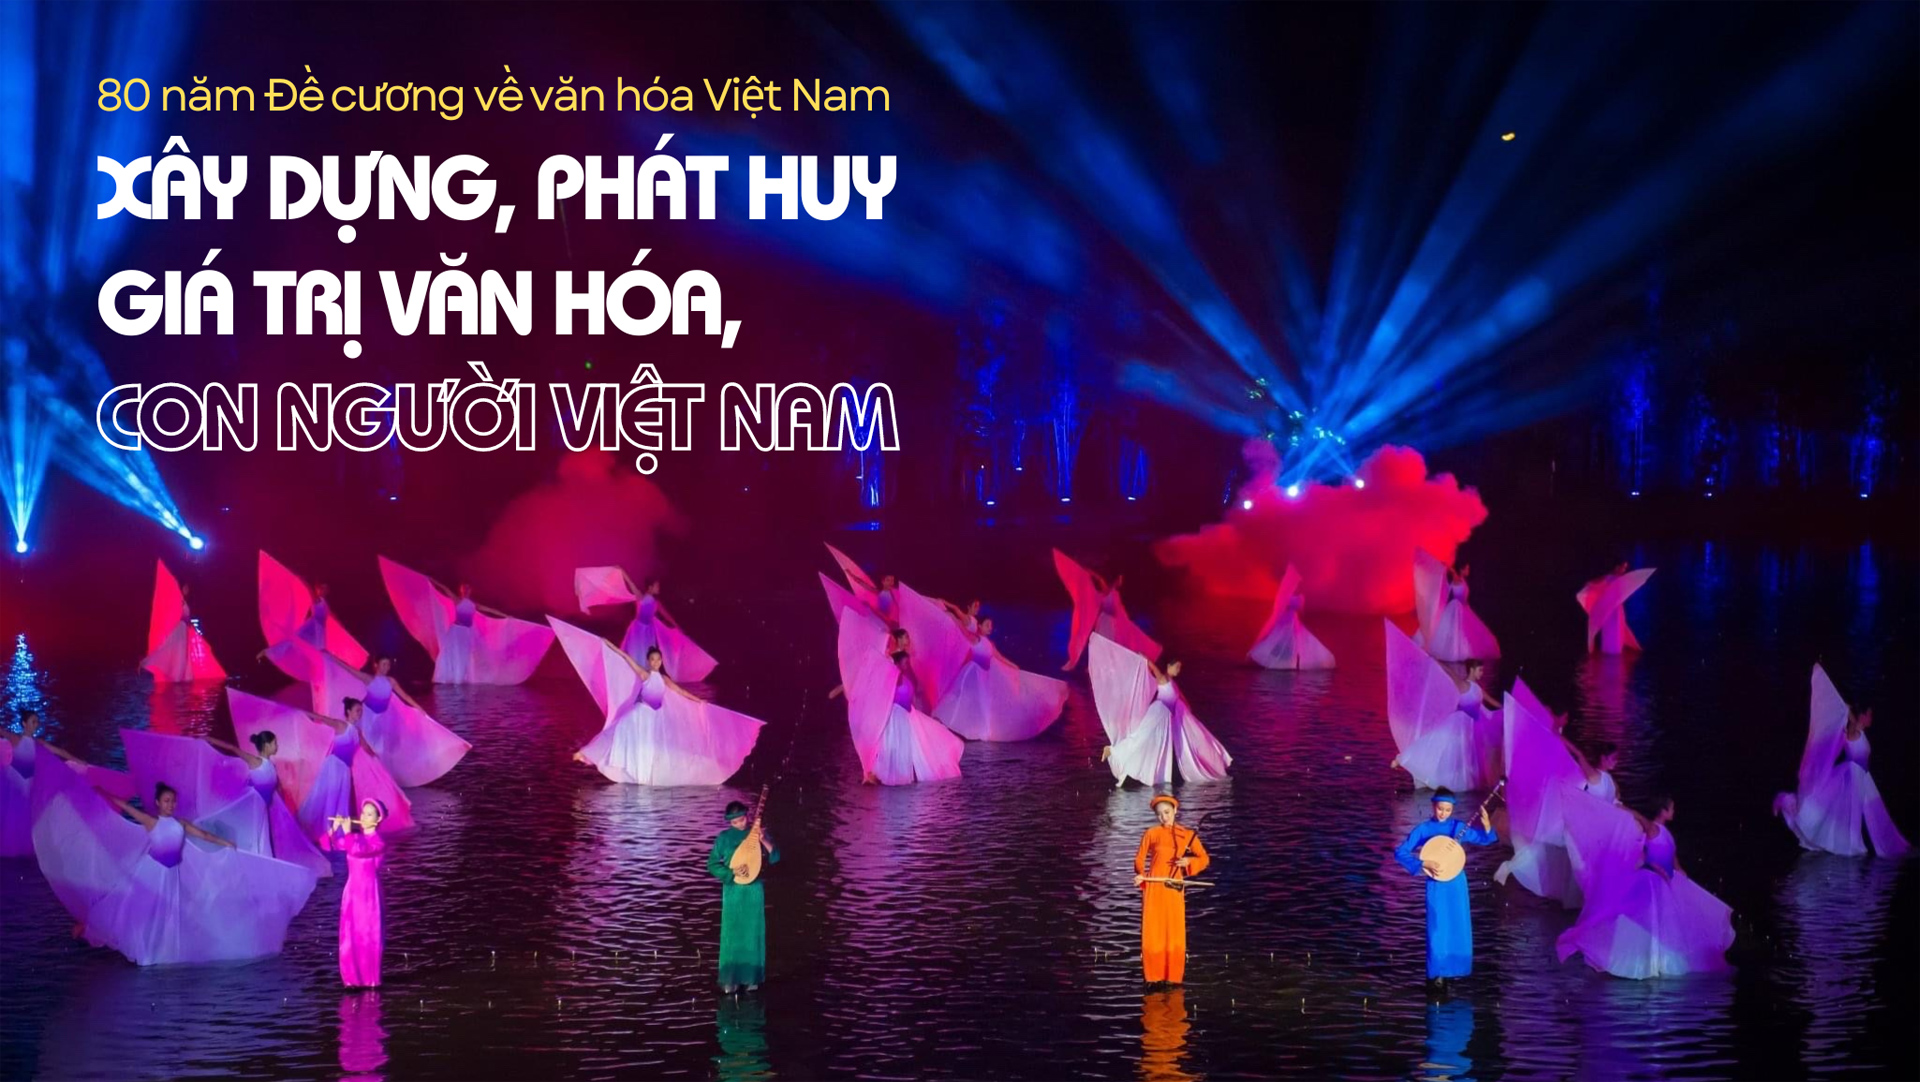 Xây dựng, phát huy giá trị văn hóa, con người Việt Nam